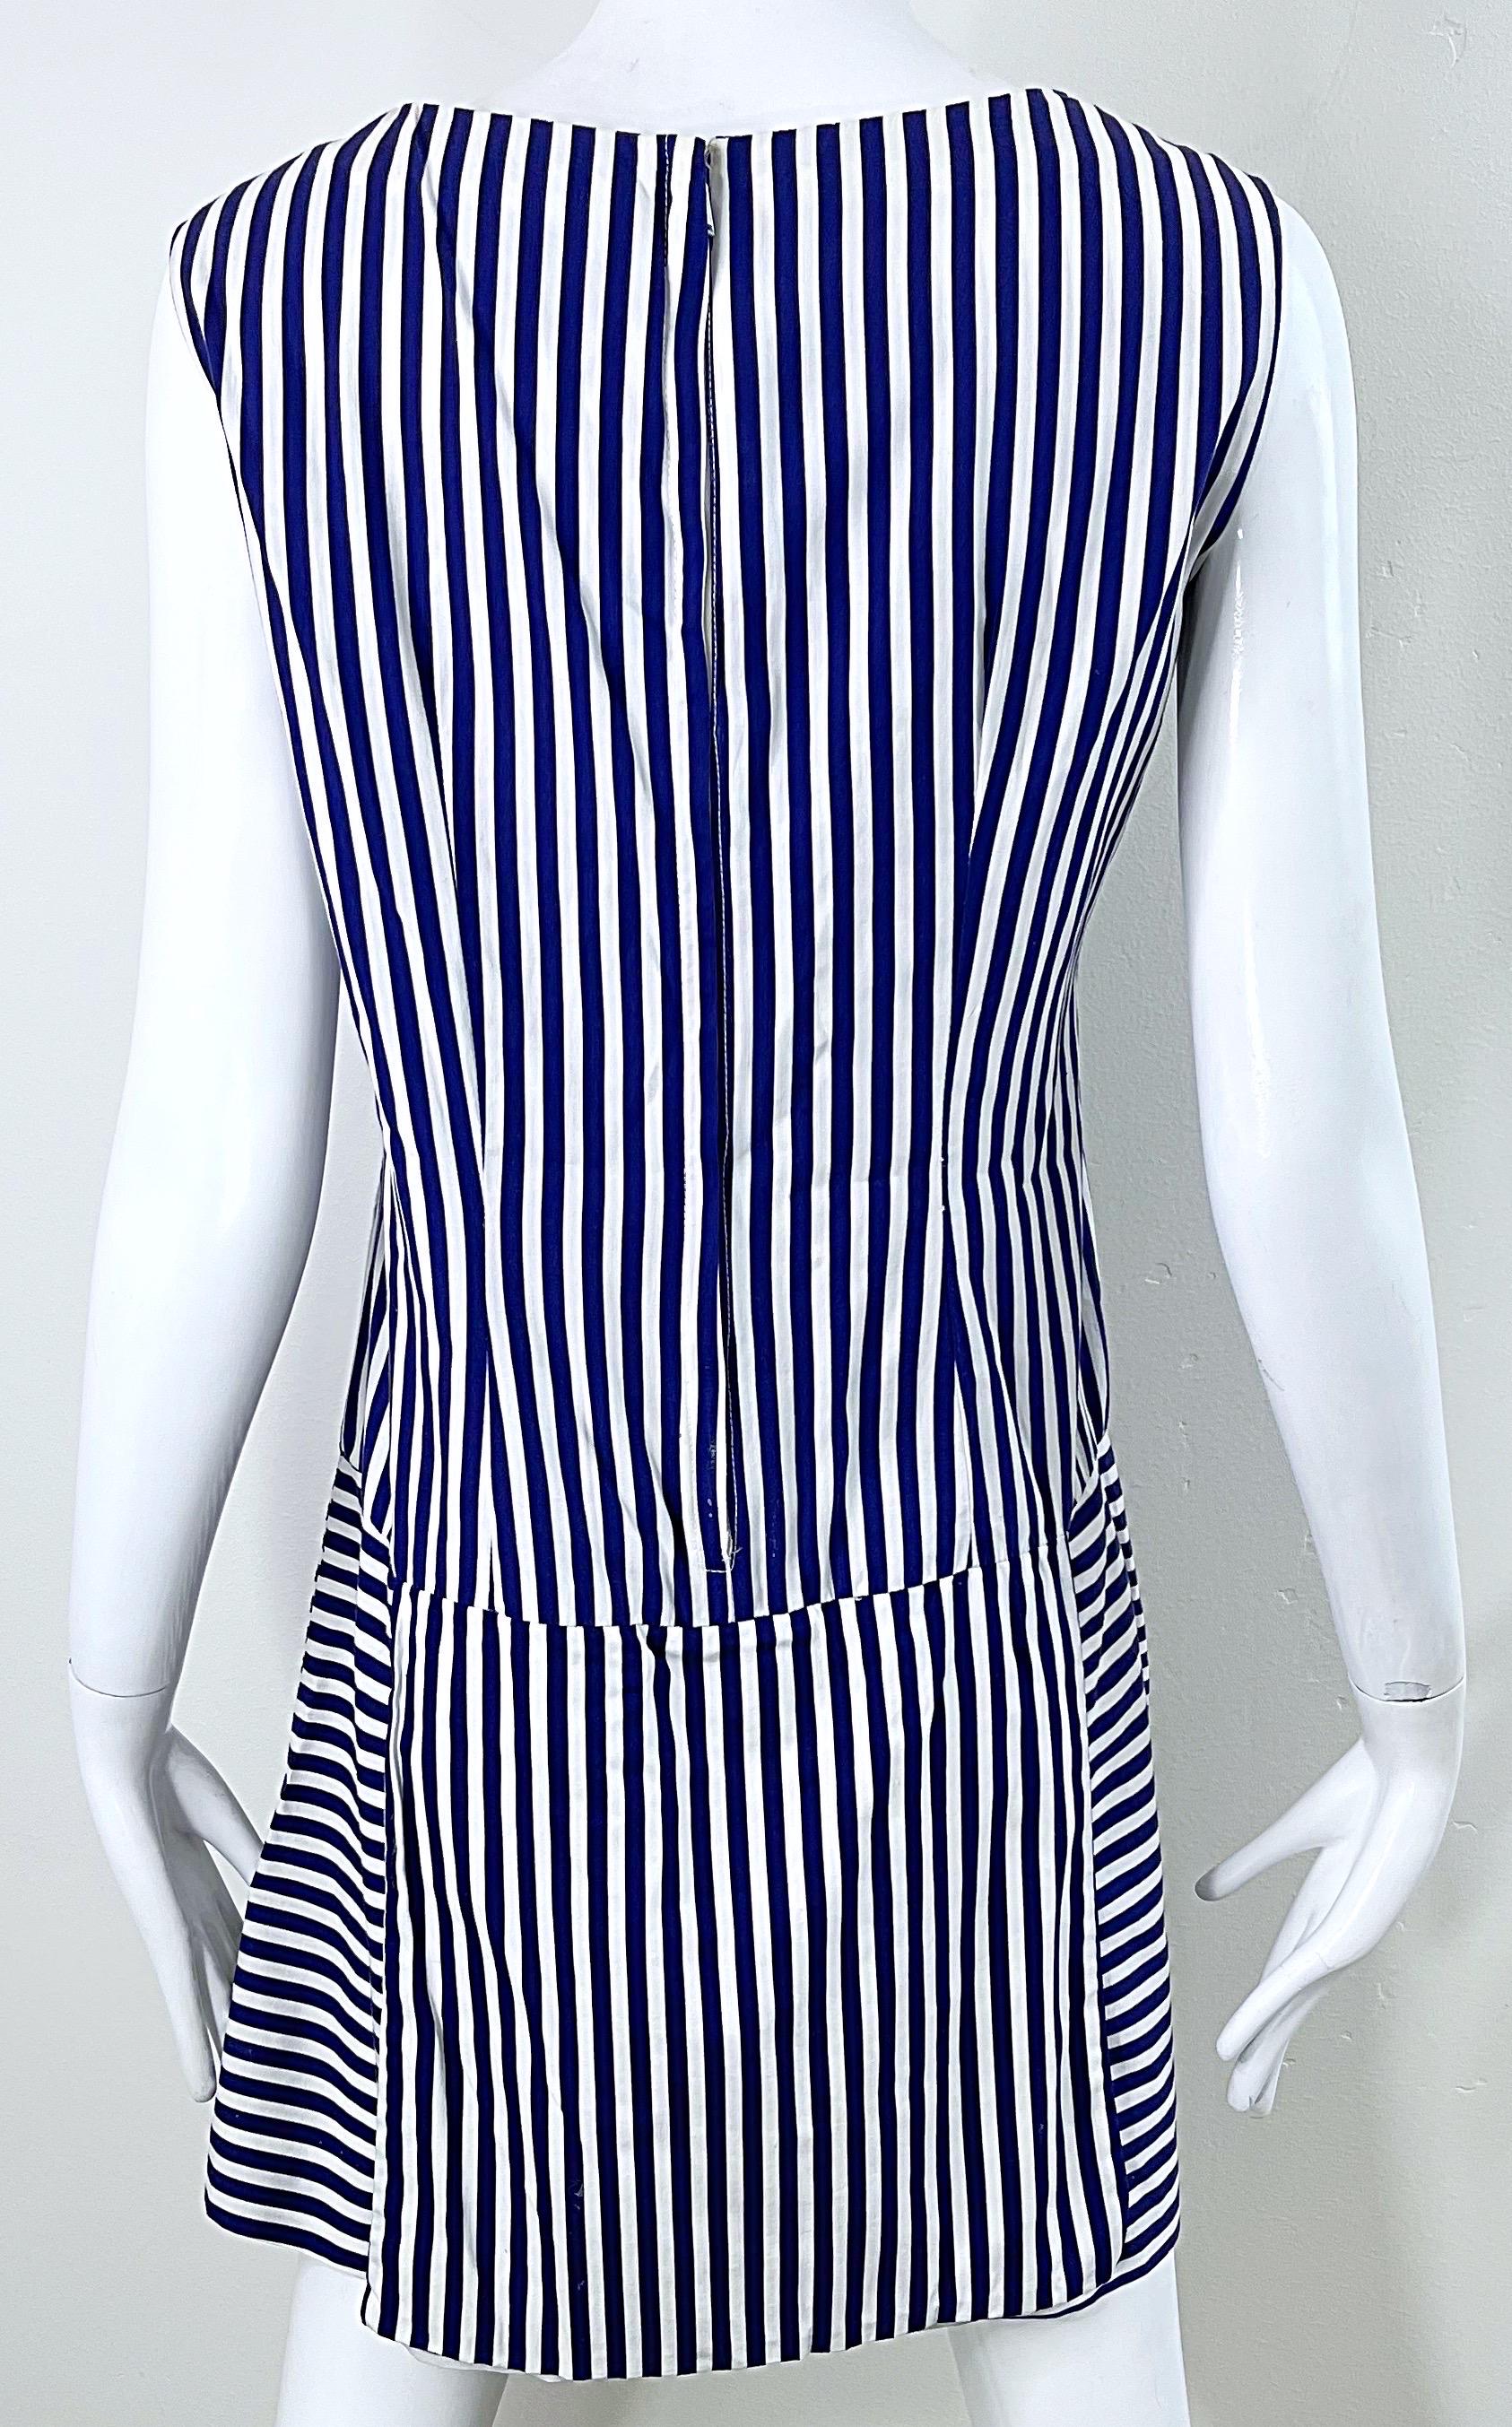 1960s Romper Large Size Navy + White Striped Cotton Vintage 60s Skort Dress For Sale 6